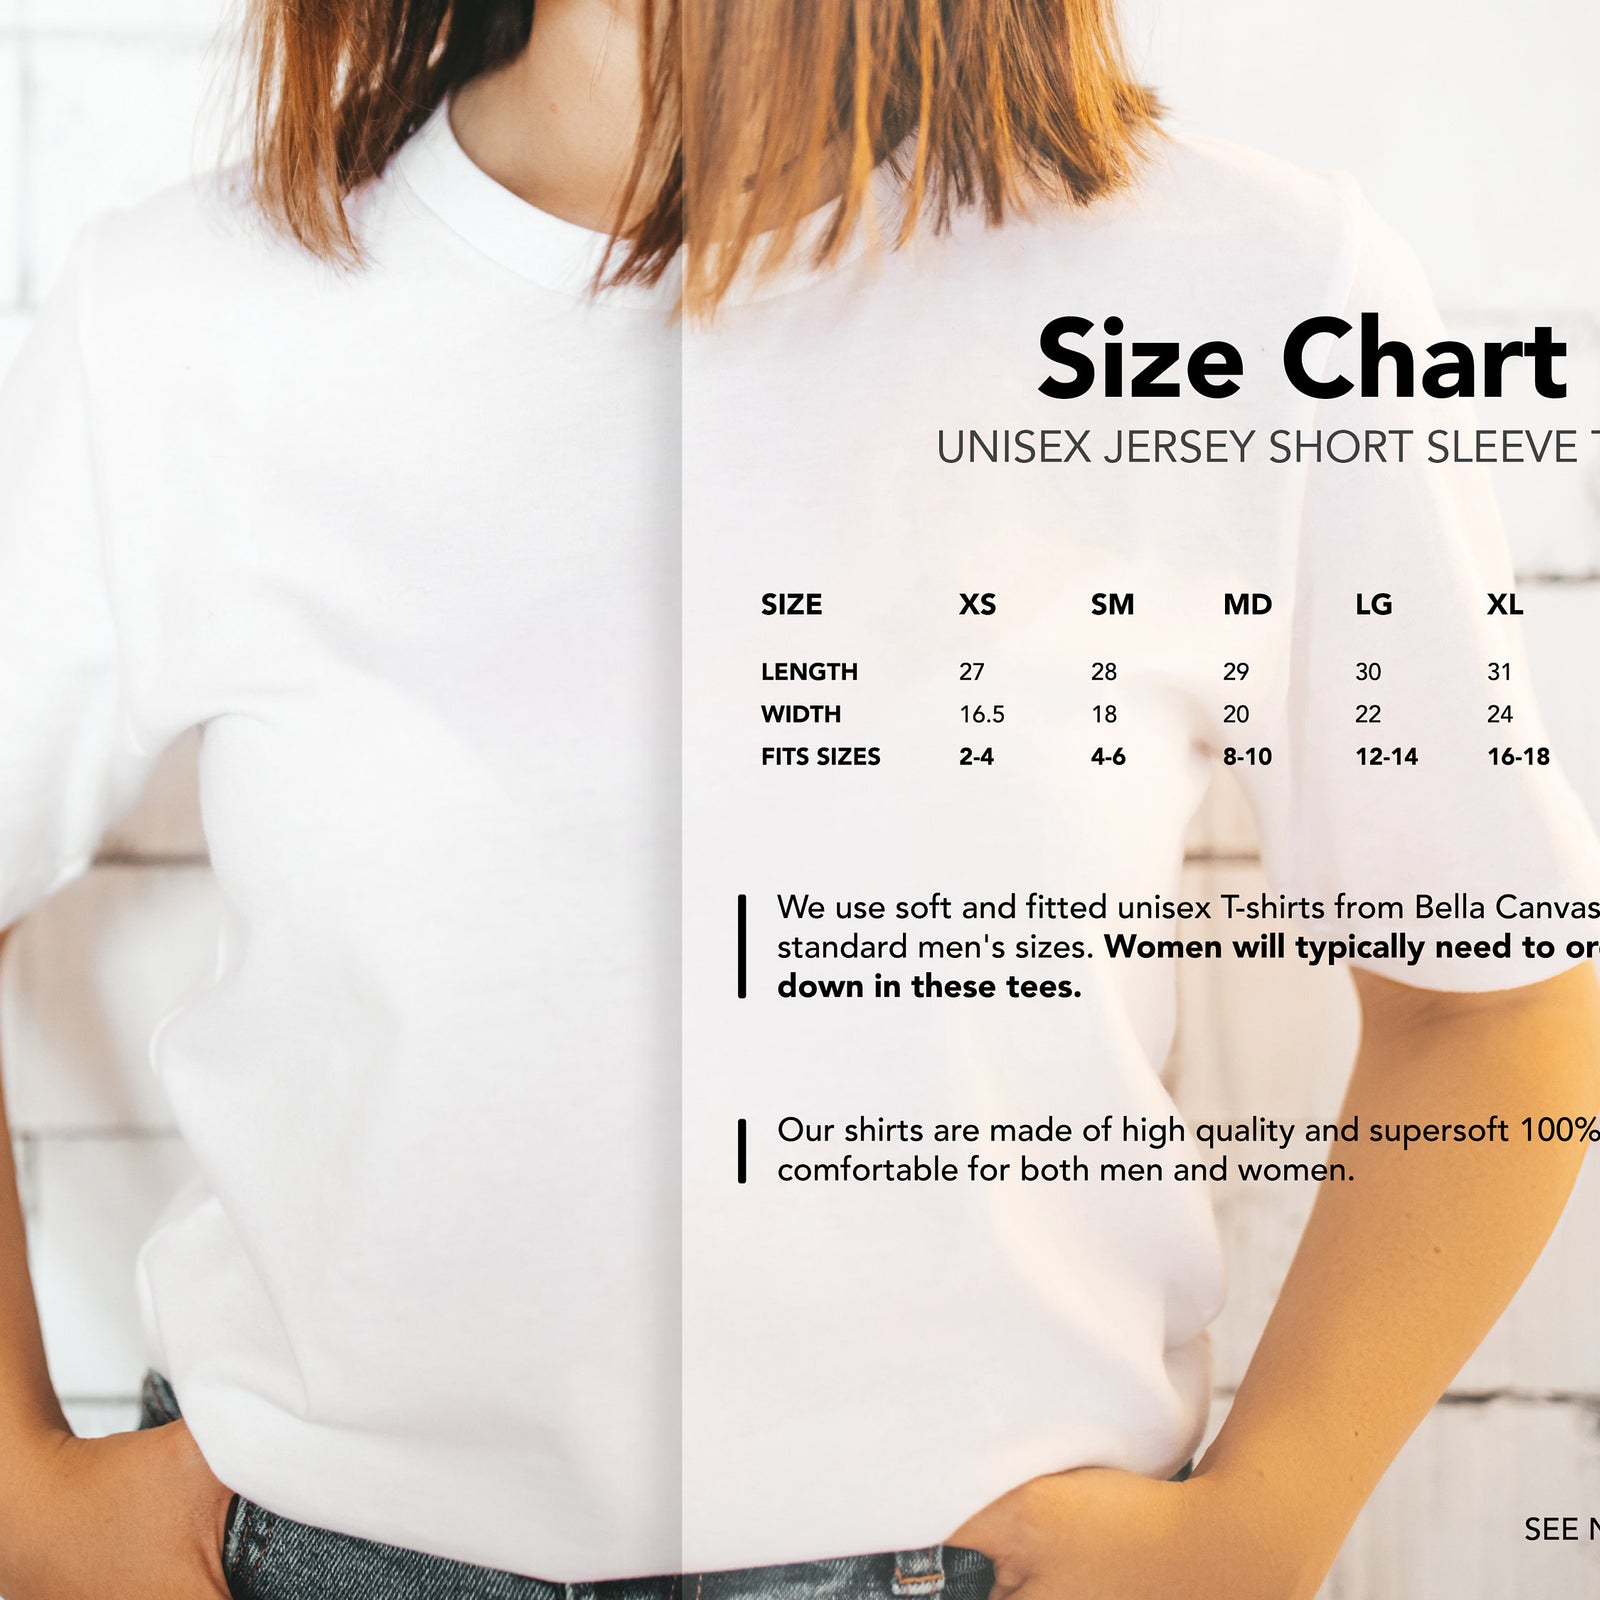 Real Estate Love Shapes- Funny Salesman Shirt - Real Estate Agent T Shirt - Home - Keys - Sales Motivational Shirt